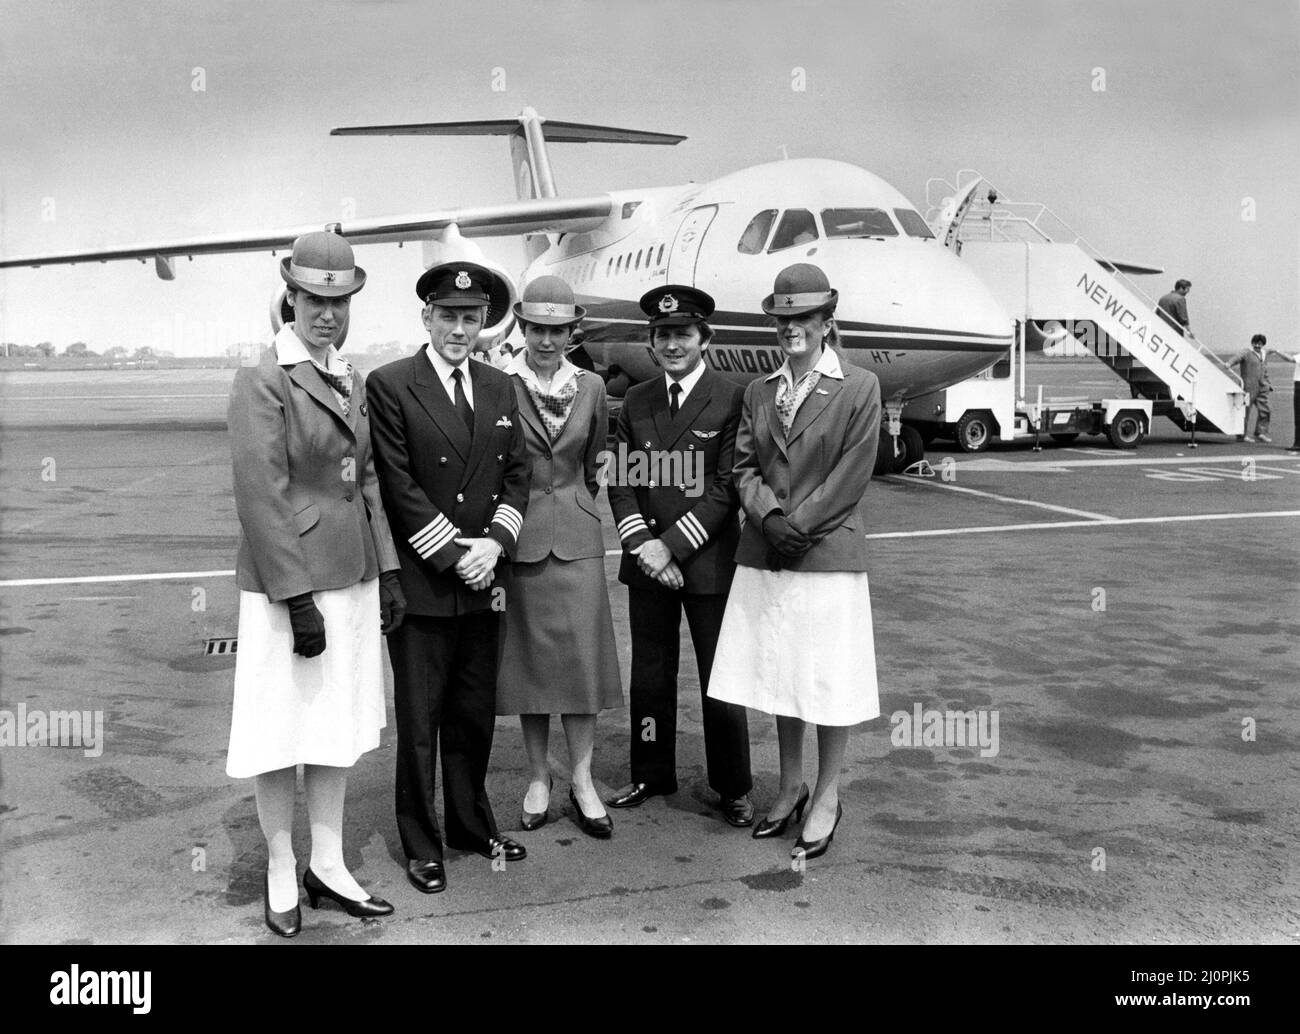 Der neue Dan-Air British Aerospace 146 (BAE 146), ein mittelständisches Verkehrsflugzeug, auch bekannt als „Whisper Jet“. Das Flugzeug flog Beamte und drücken in Newcastle Airport, um den neuen 7m Jet und Service zu veröffentlichen. Die Crew, von links nach rechts, ist Stewardess Joyce Pearcey, Capt. John Nightingale, Stewardess Frances Shepherd, Senior First Officer Owen Wright und Stewardess Gail Gillies. 12/06/1983 Stockfoto